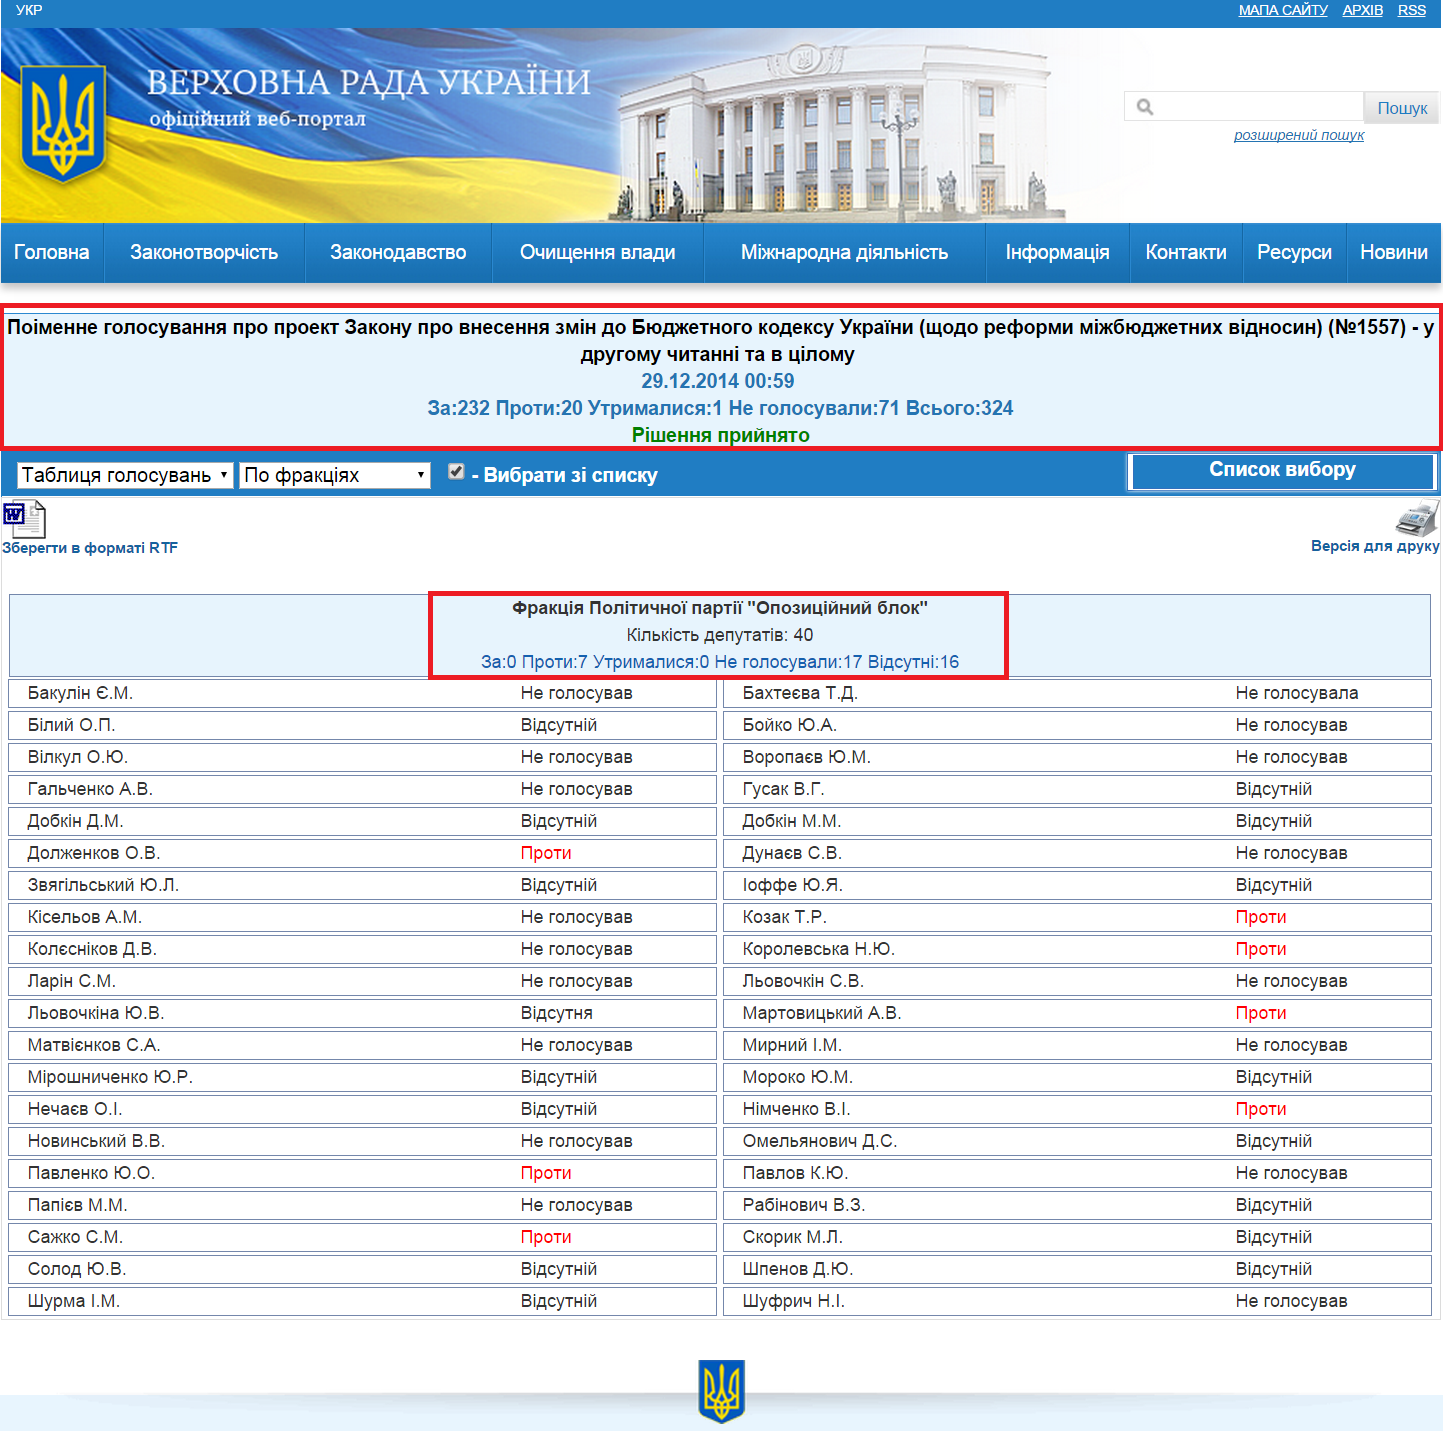 http://w1.c1.rada.gov.ua/pls/radan_gs09/ns_golos?g_id=293